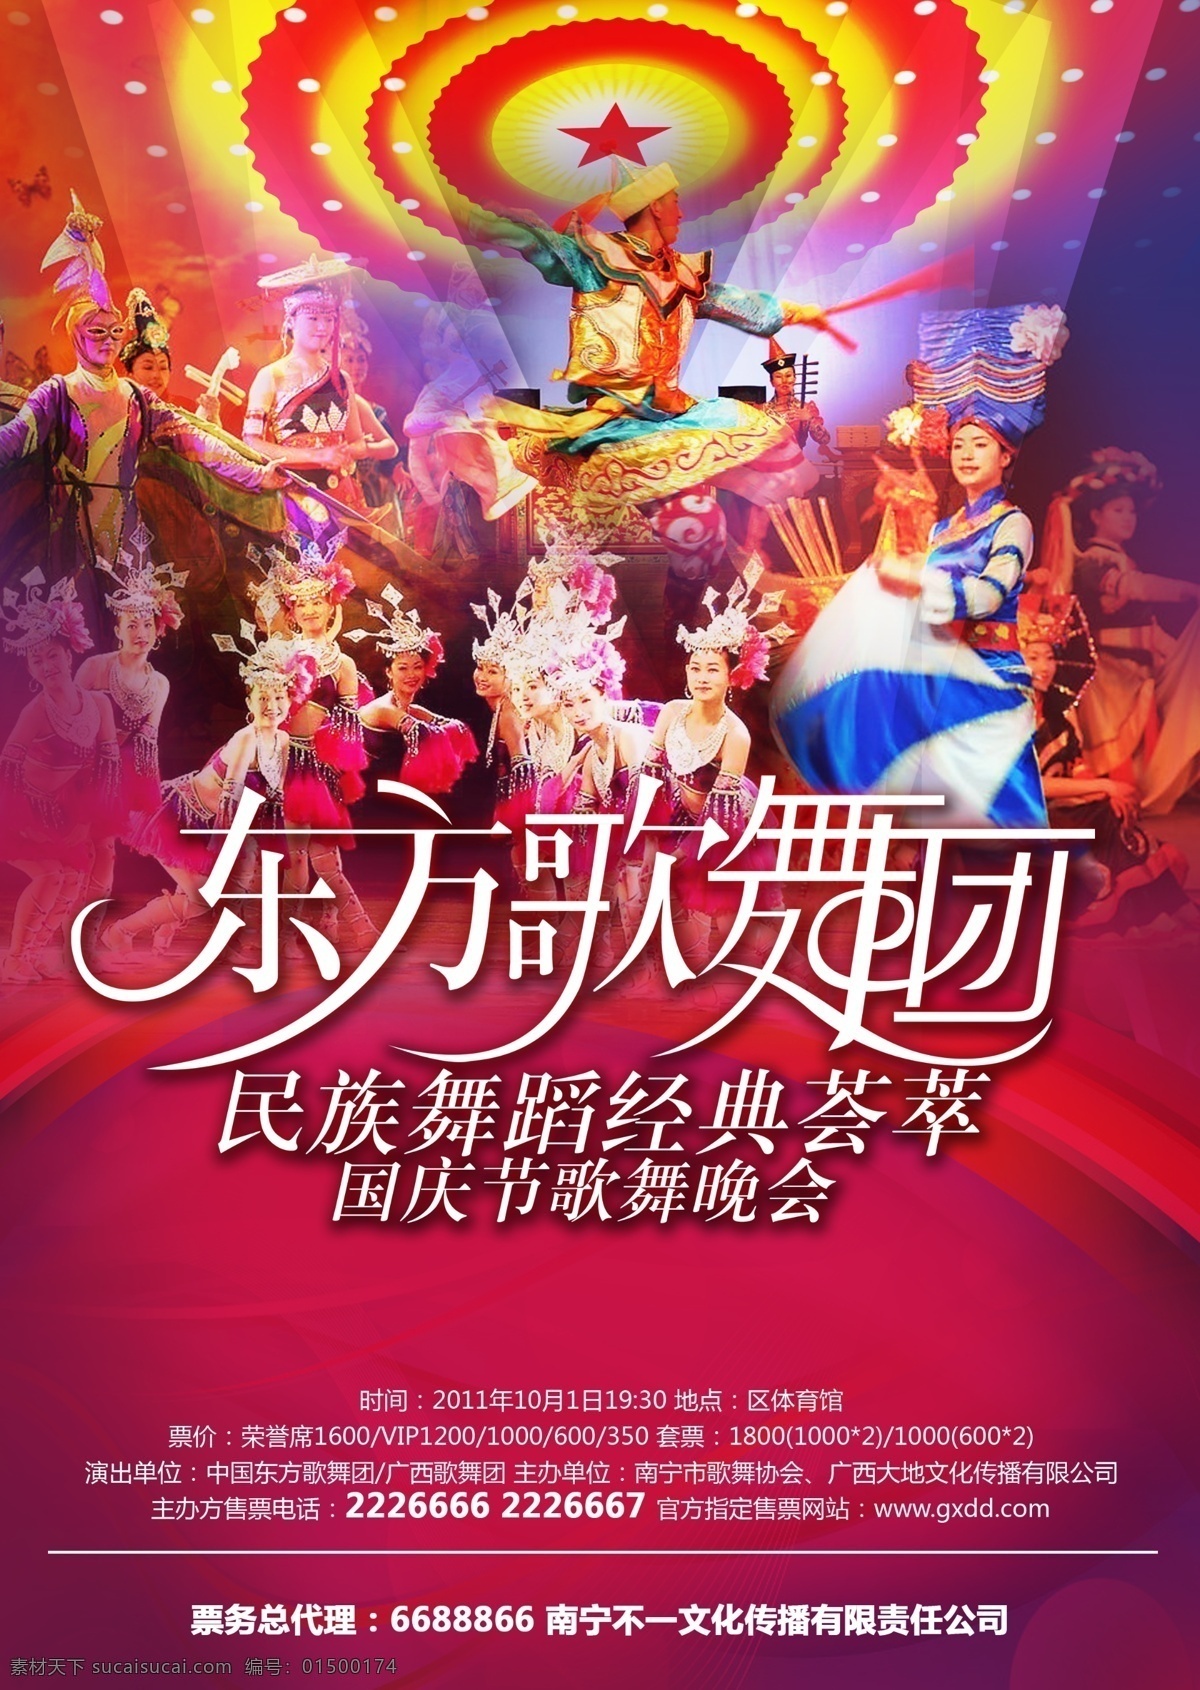 歌舞团海报 歌舞团 东方歌舞团 民族舞蹈 歌舞海报 晚会宣传 晚会 舞蹈 广告设计模板 源文件